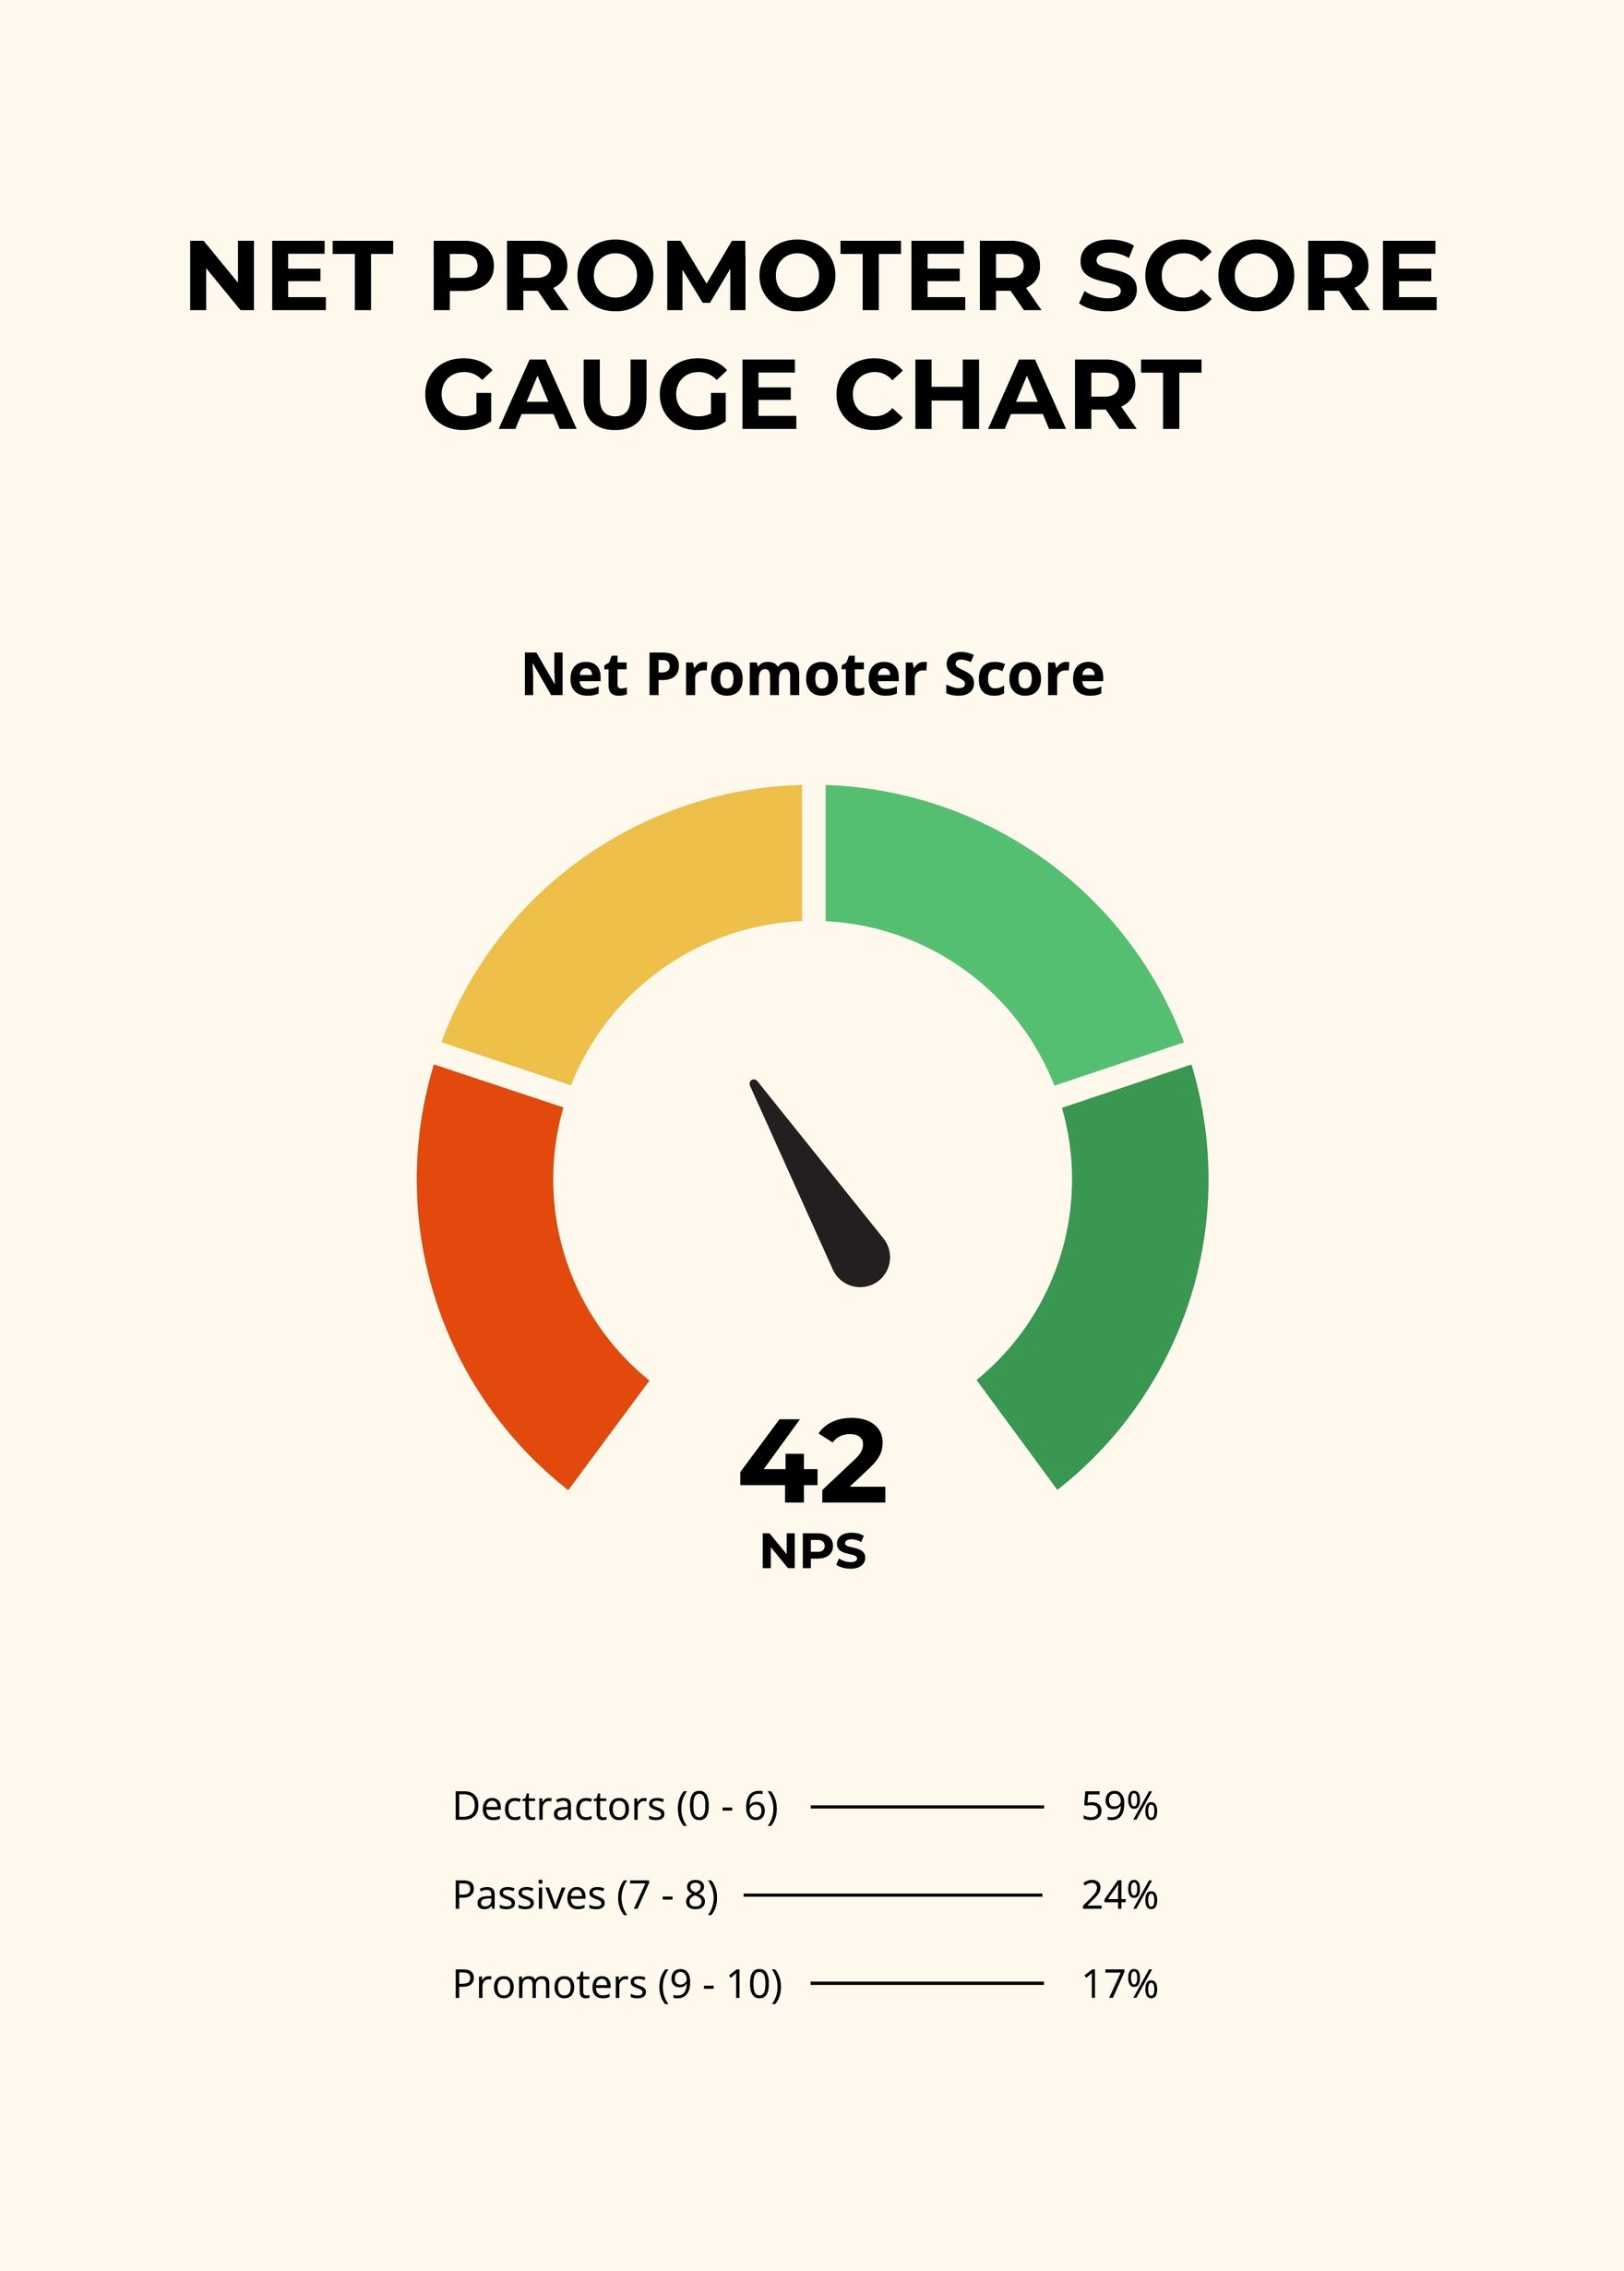 Free Net Promoter Score Gauge Chart in PDF, Illustrator